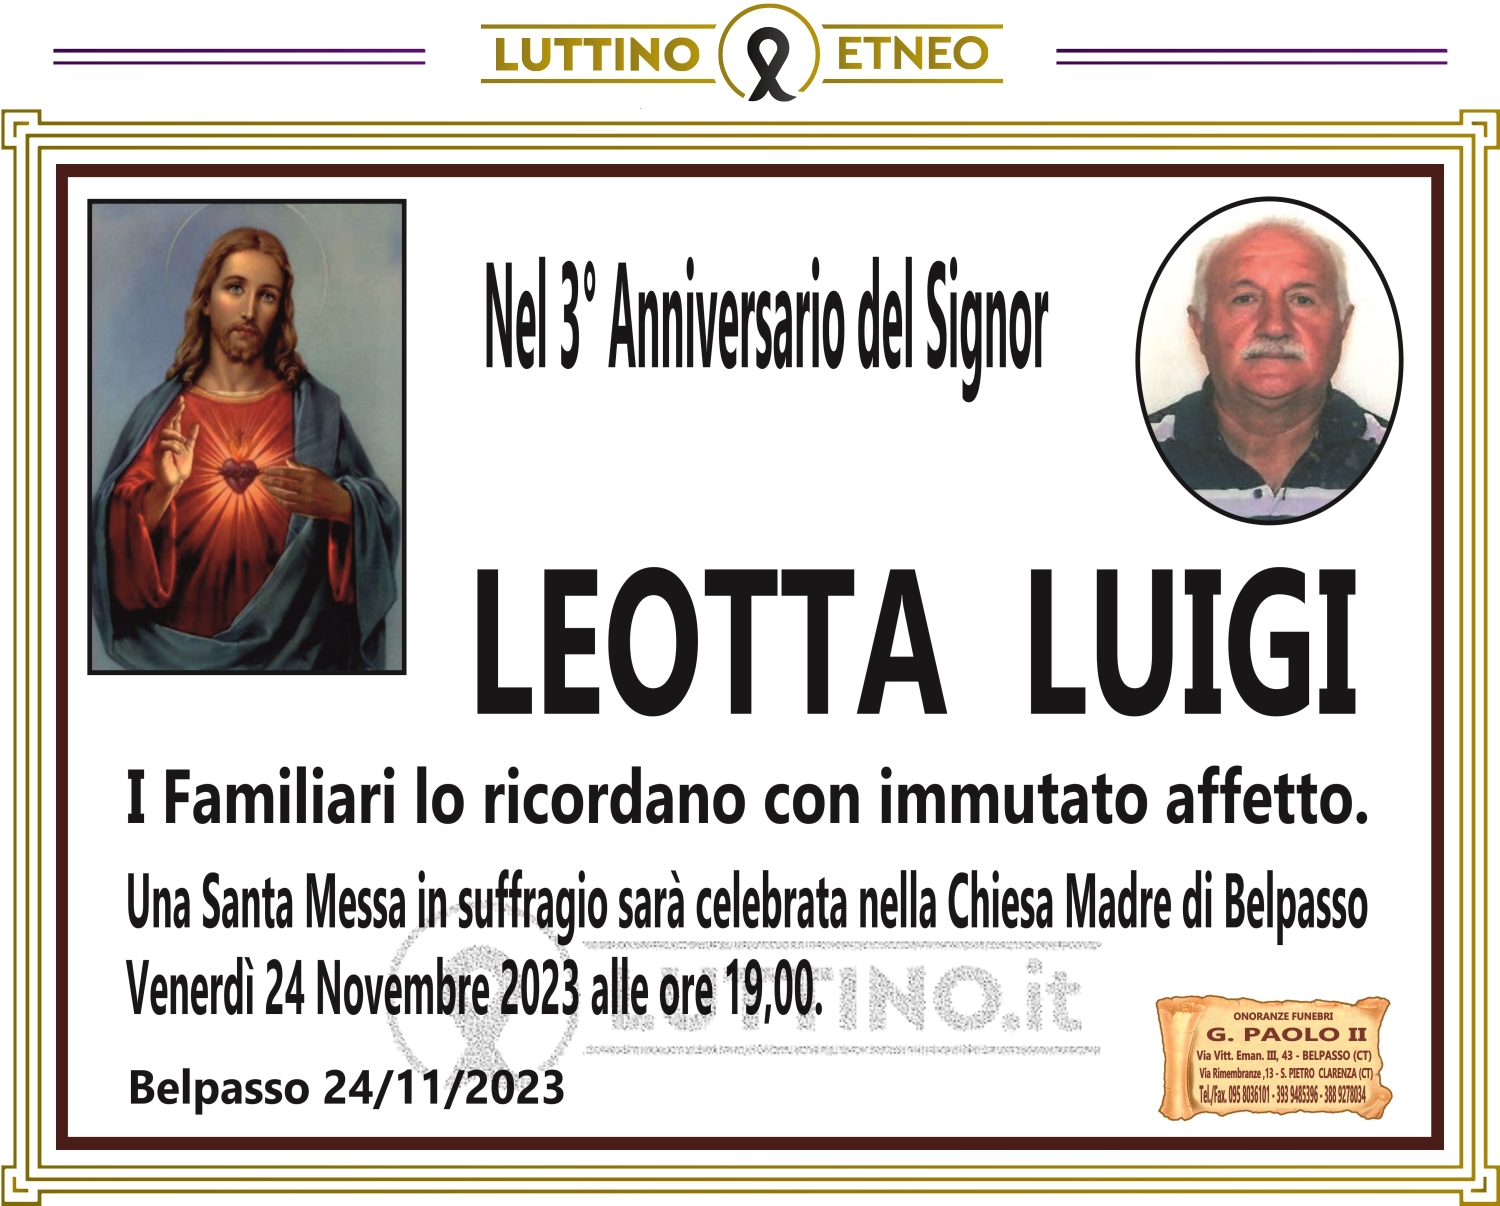 Luigi Leotta